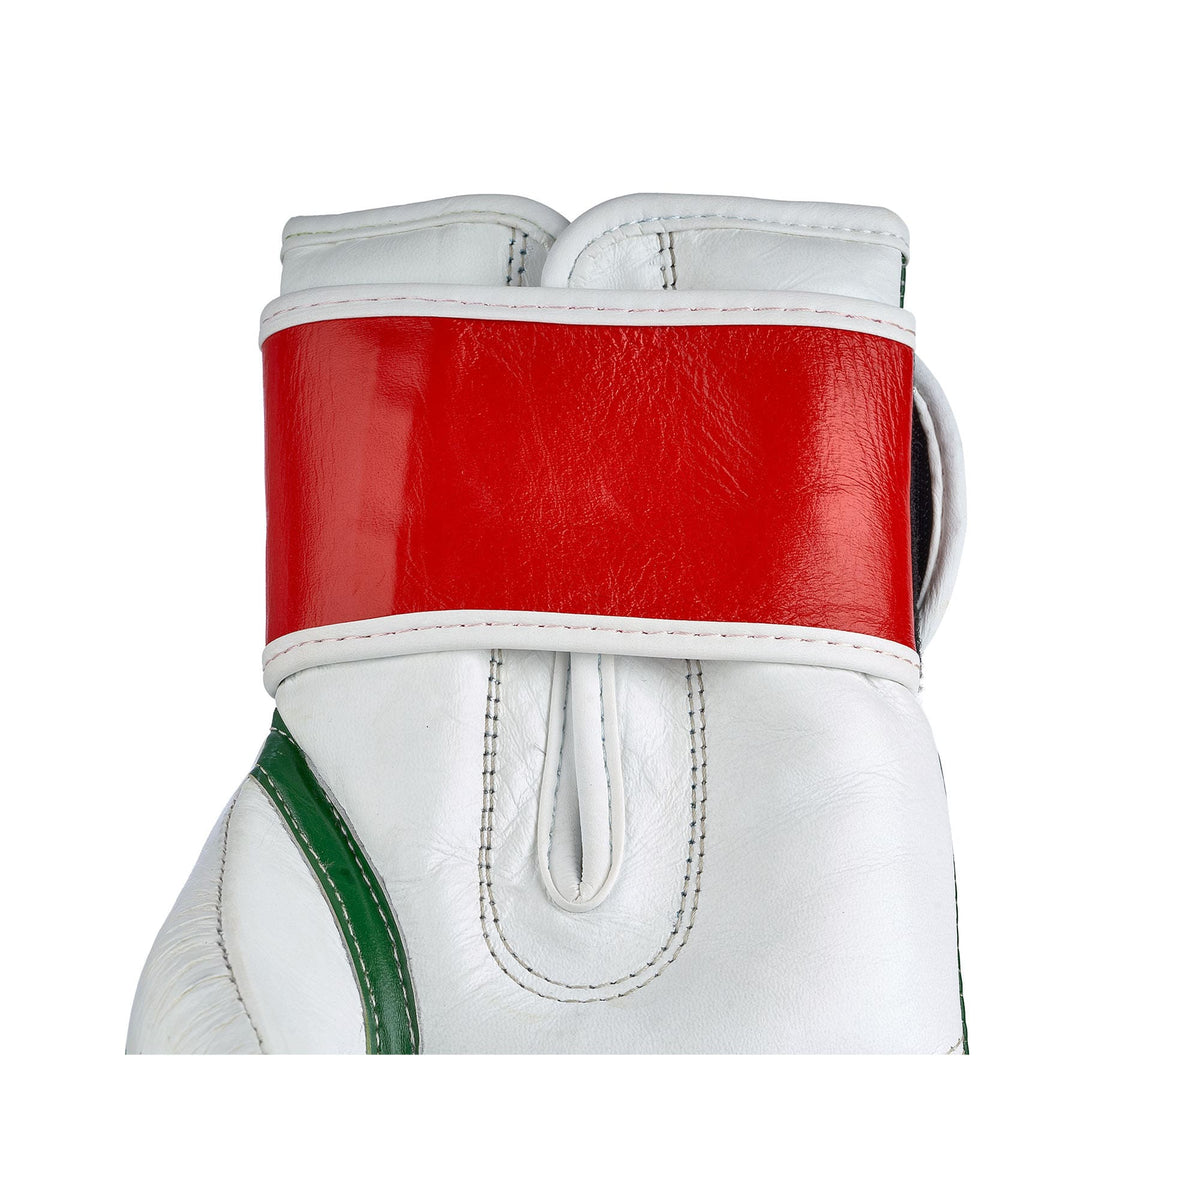 Innenansicht des Gelenkbereichs der italienischen Premium Boxhandschuhe, mit Fokus auf das hochwertige Leder des Klettverschlusses und die präzisen Nähte. Diese Detailaufnahme zeigt die sorgfältige Verarbeitung, die Langlebigkeit und die Stabilität des Handschuhs gewährleistet, optimiert für Boxer aller Niveaus. Die Qualität des Materials und die saubere Verarbeitung bieten zusätzlichen Komfort und Schutz für das Handgelenk, ideal für intensives Training und Sparring.